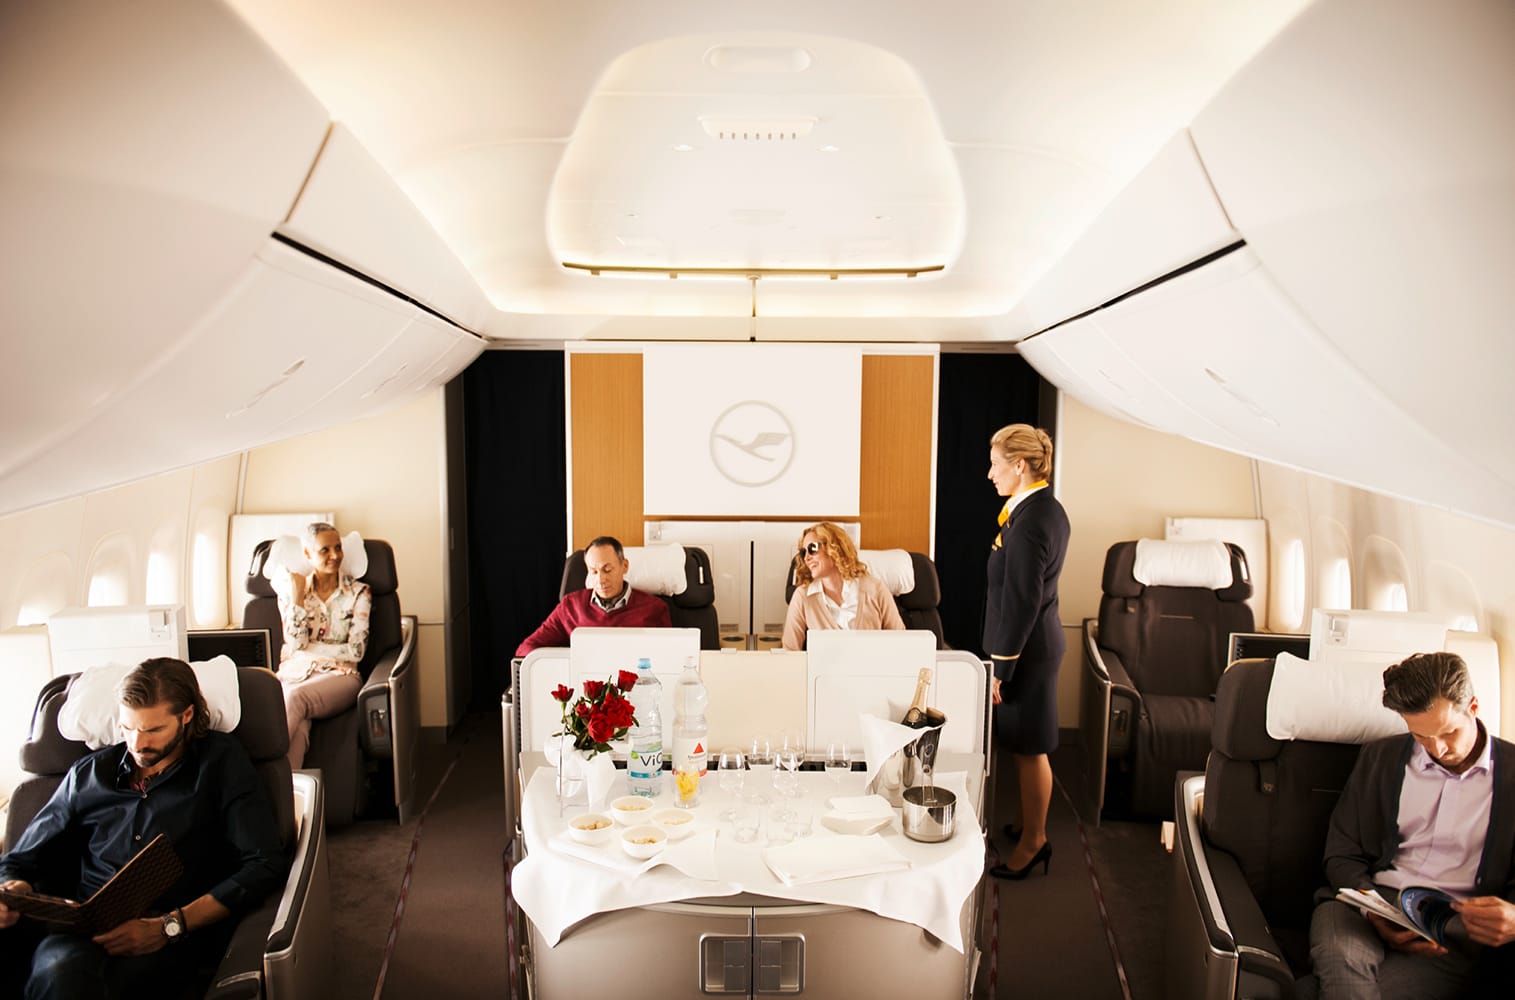 Zwar hat man bei der Lufthansa keine separate Kabine, da man sich den Raum jedoch nur mit sieben weiteren Passagieren teilt, fühlt man sich wie im Privatjet.